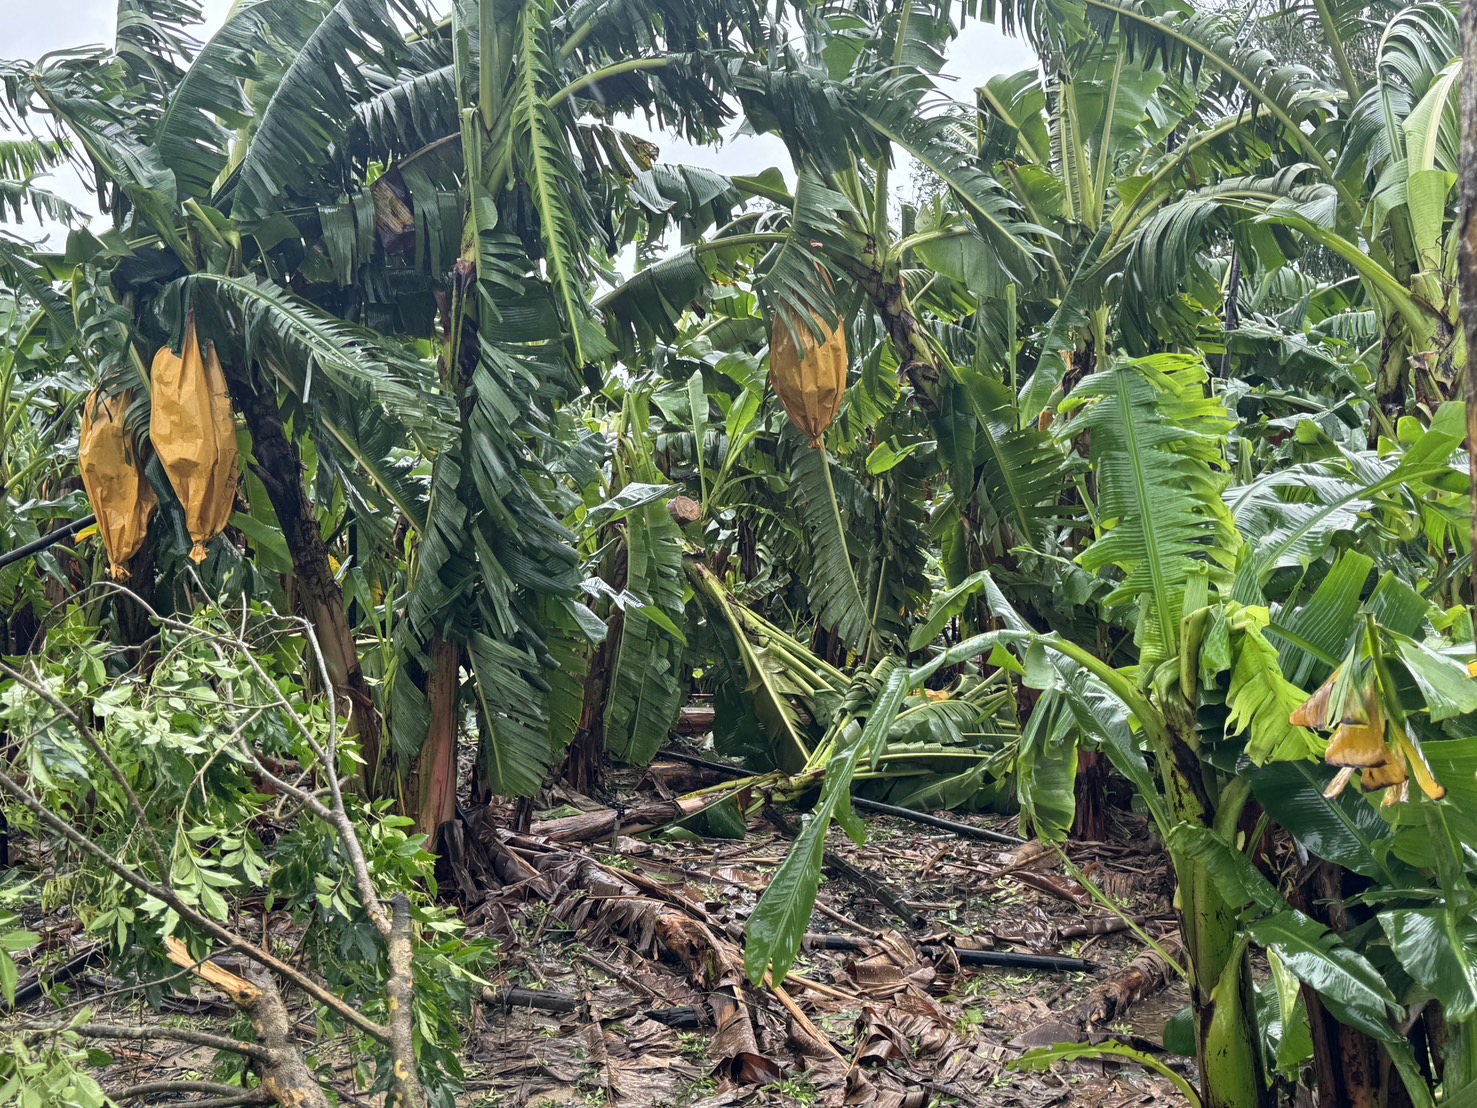 臺南市農產業受凱米颱風災損 7月27日至8月5日受理現金救助申請